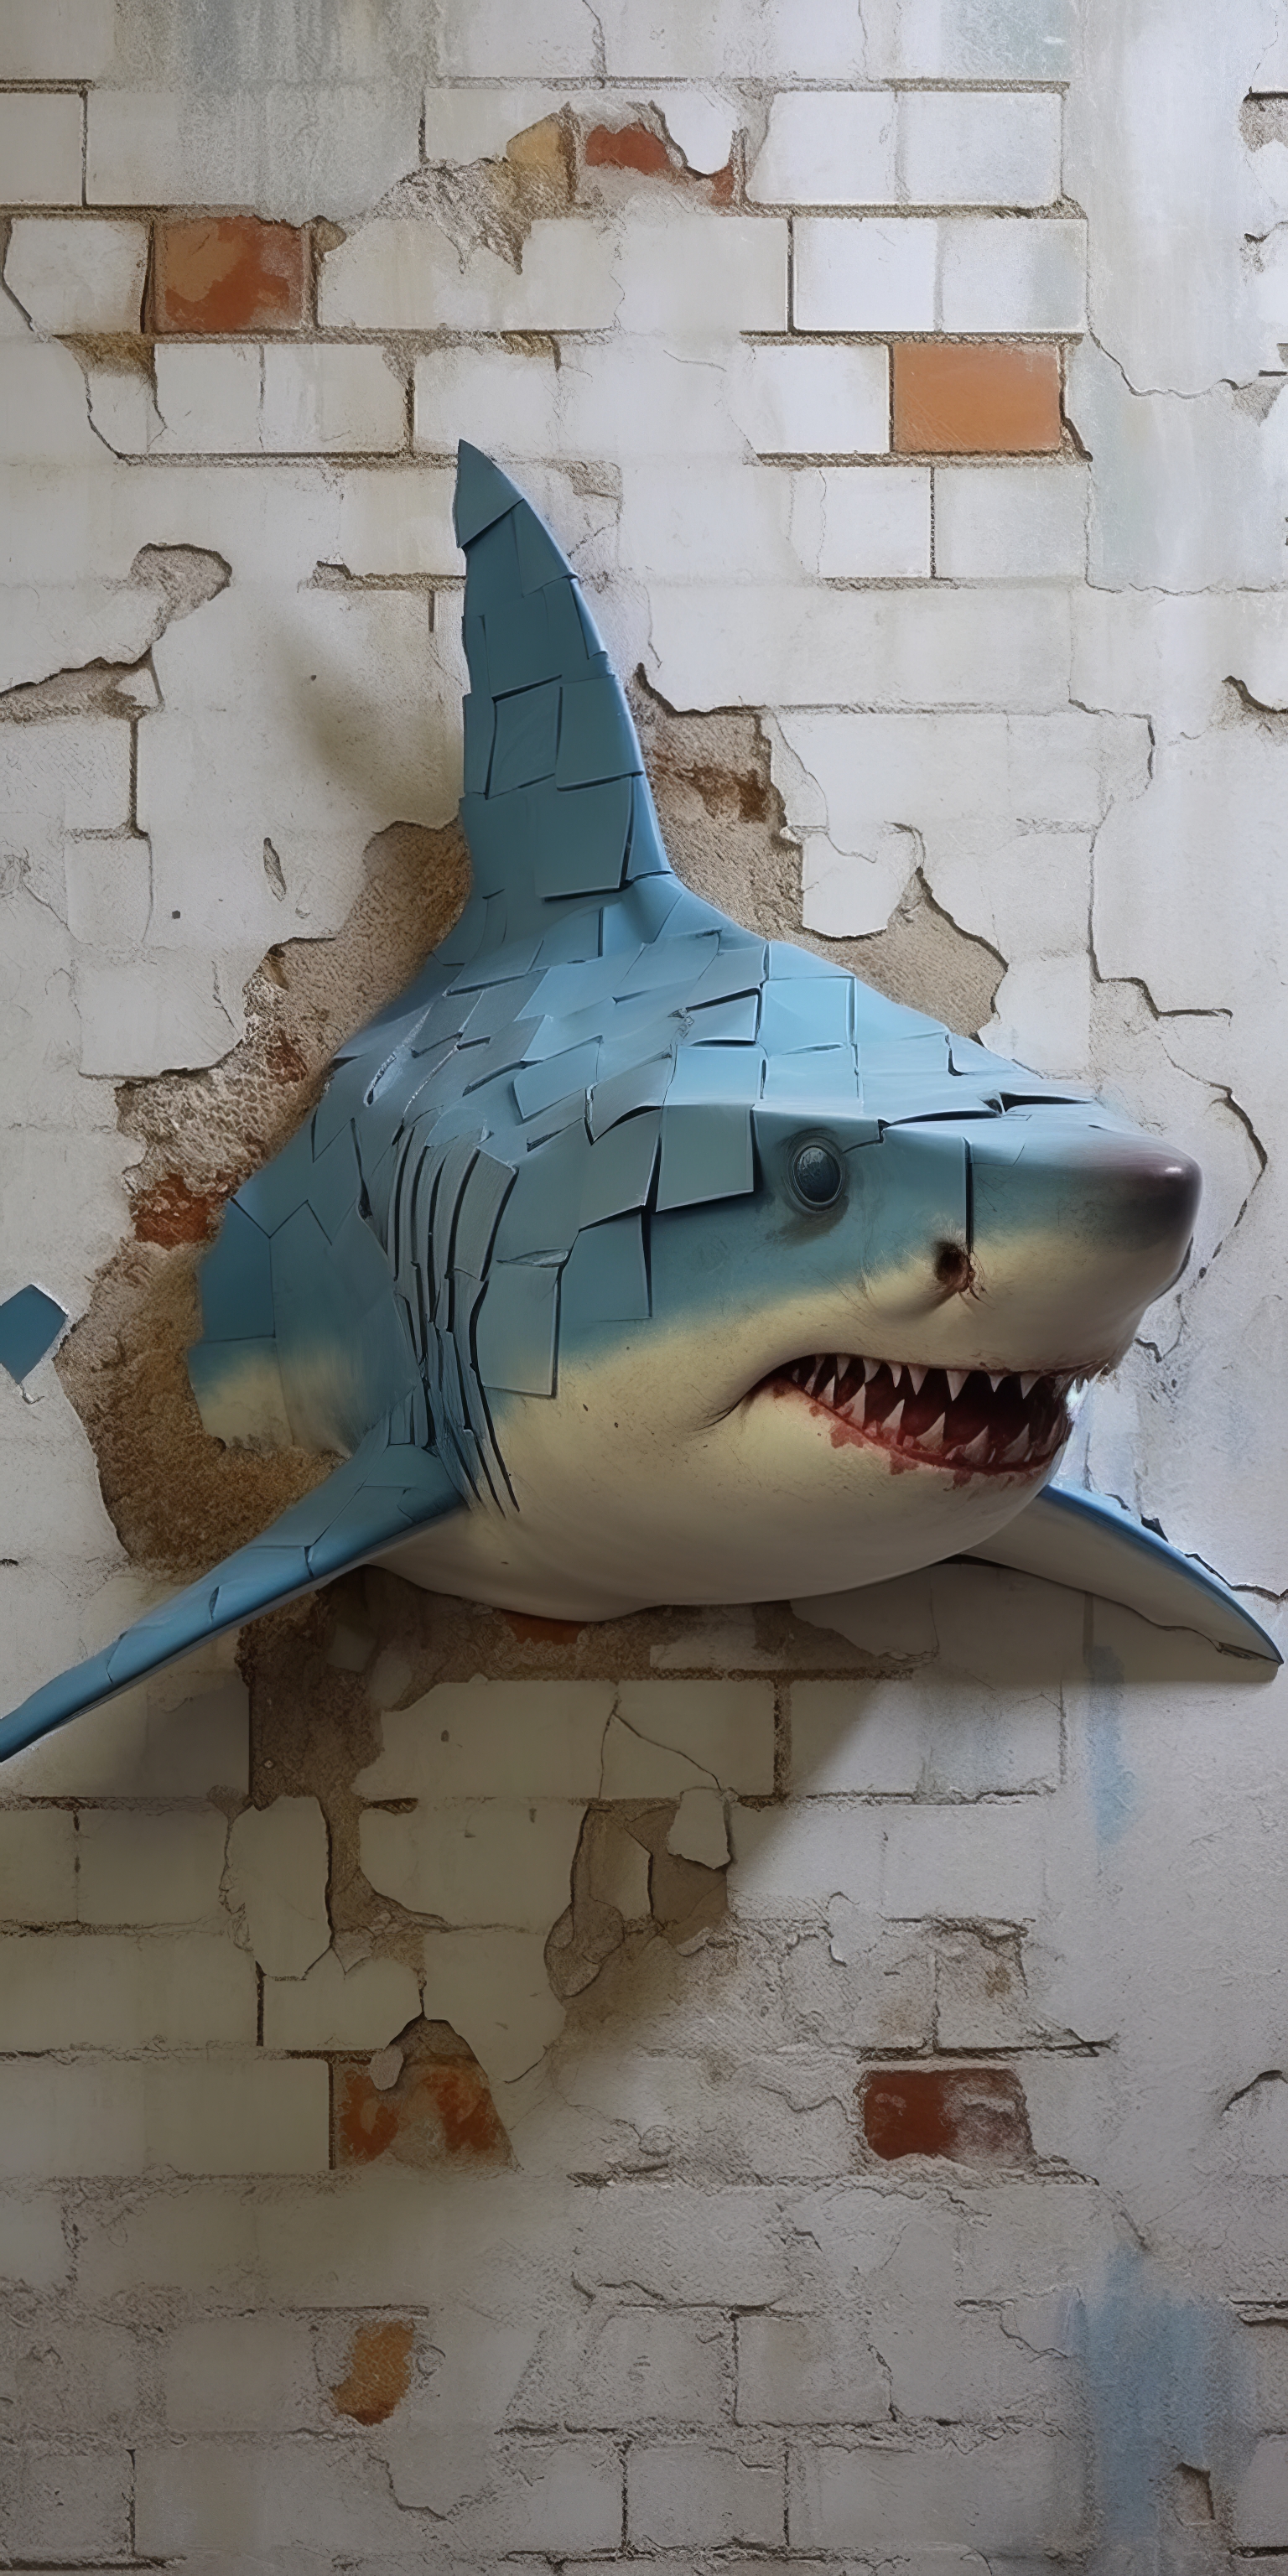 General 1536x3072 AI art animals shark wall portrait display